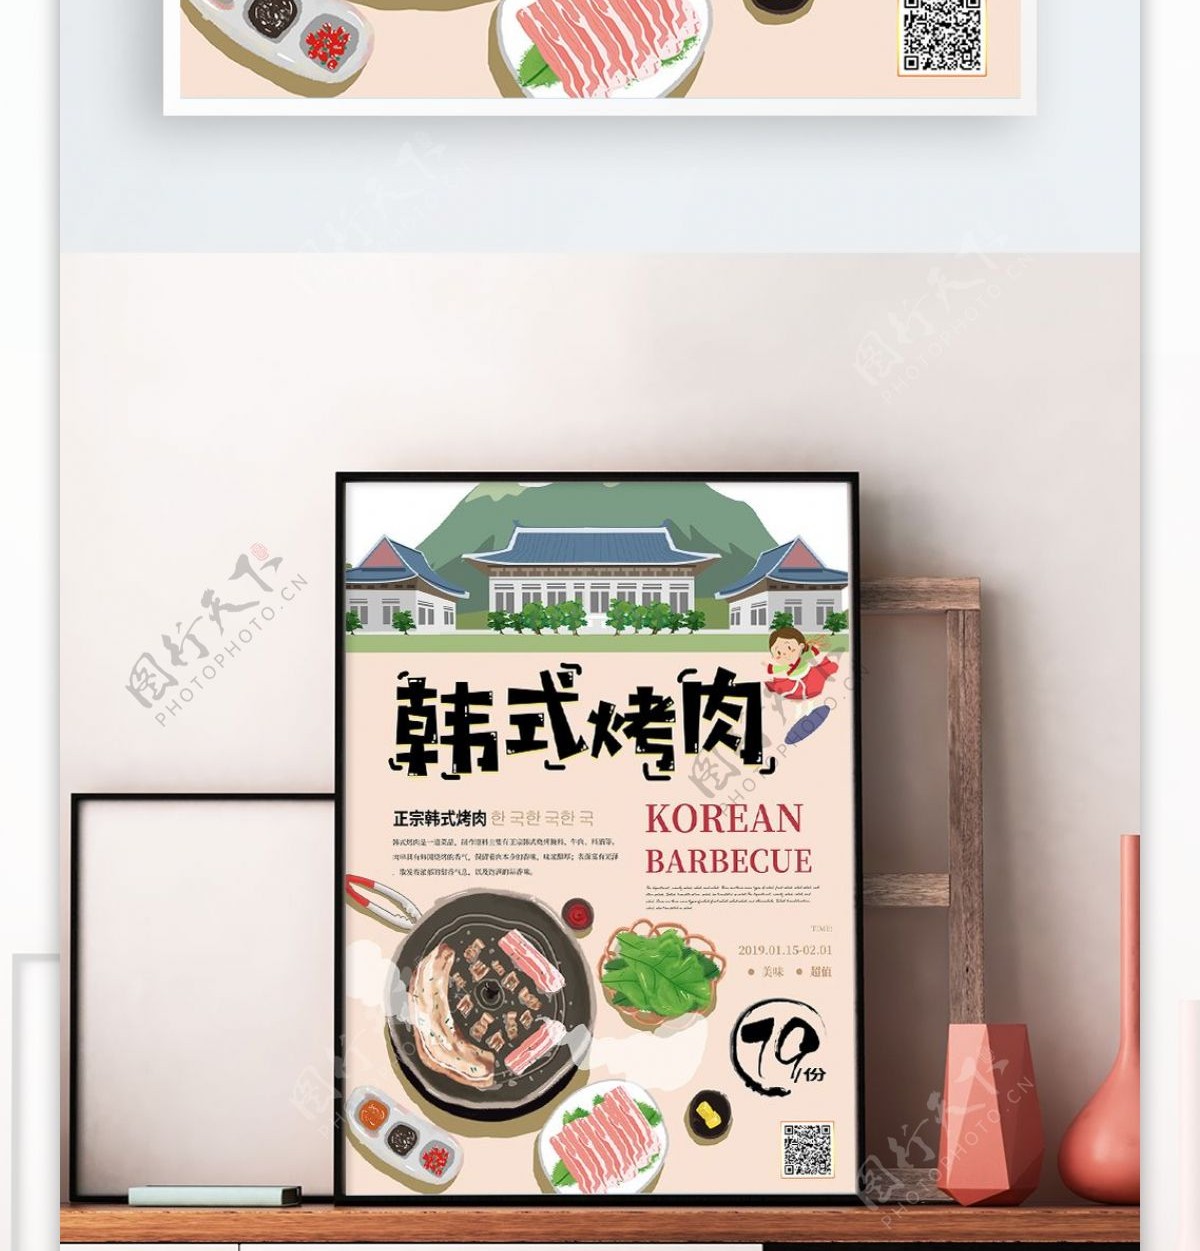 简约韩式烤肉插画风美食海报